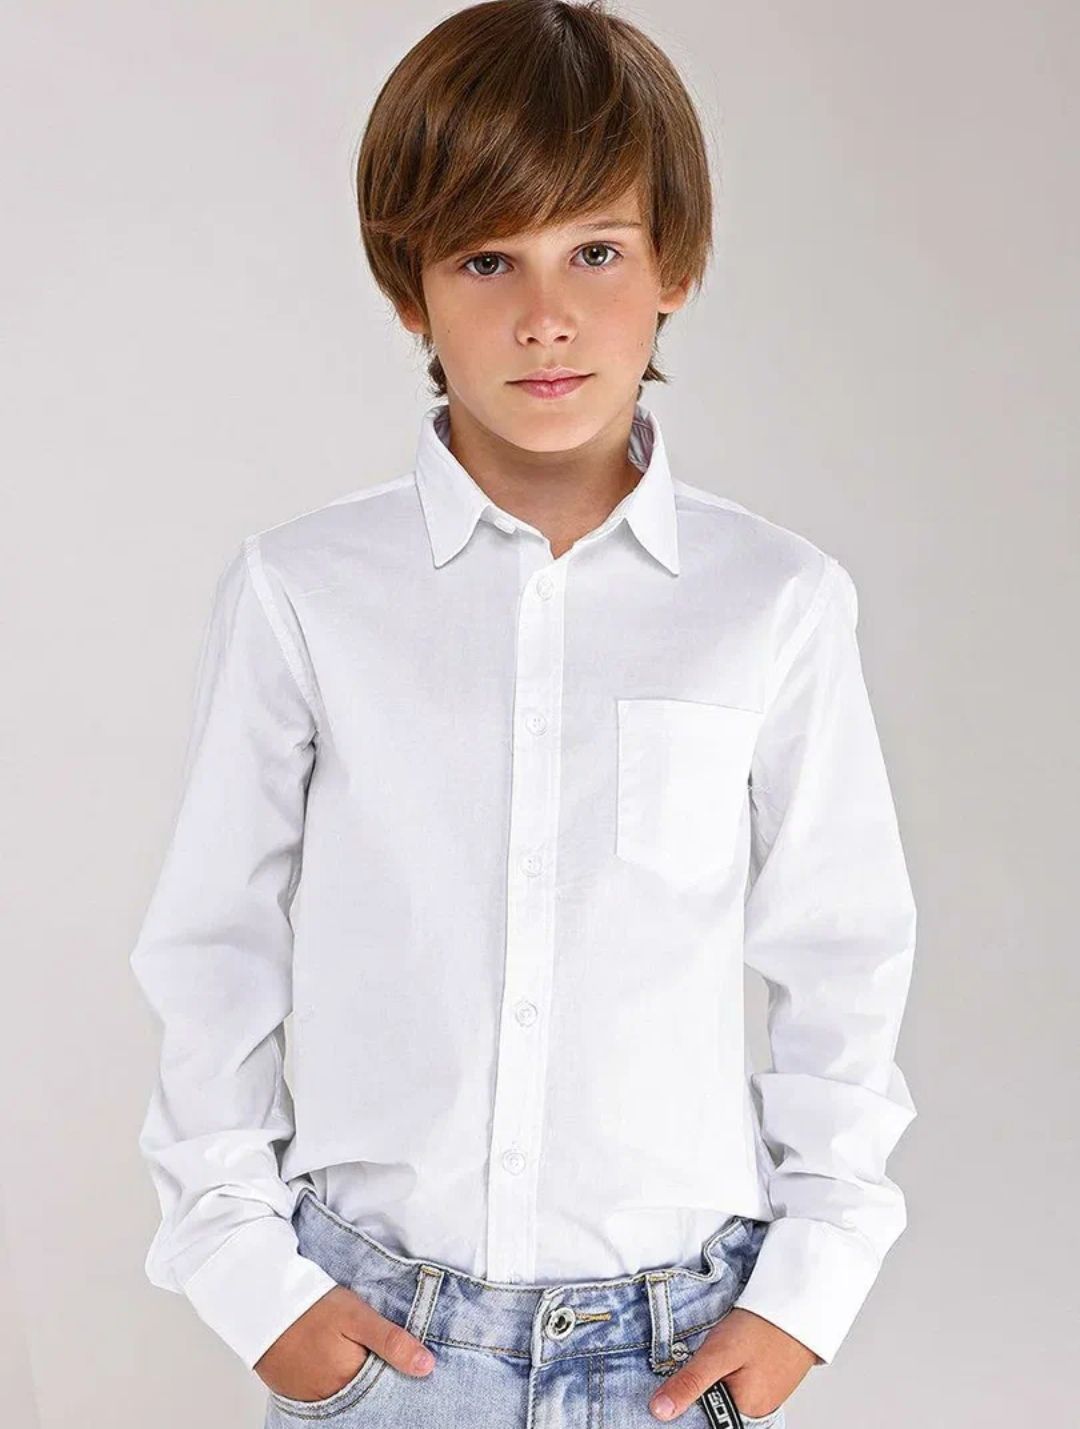 Мальчик в белой рубашке